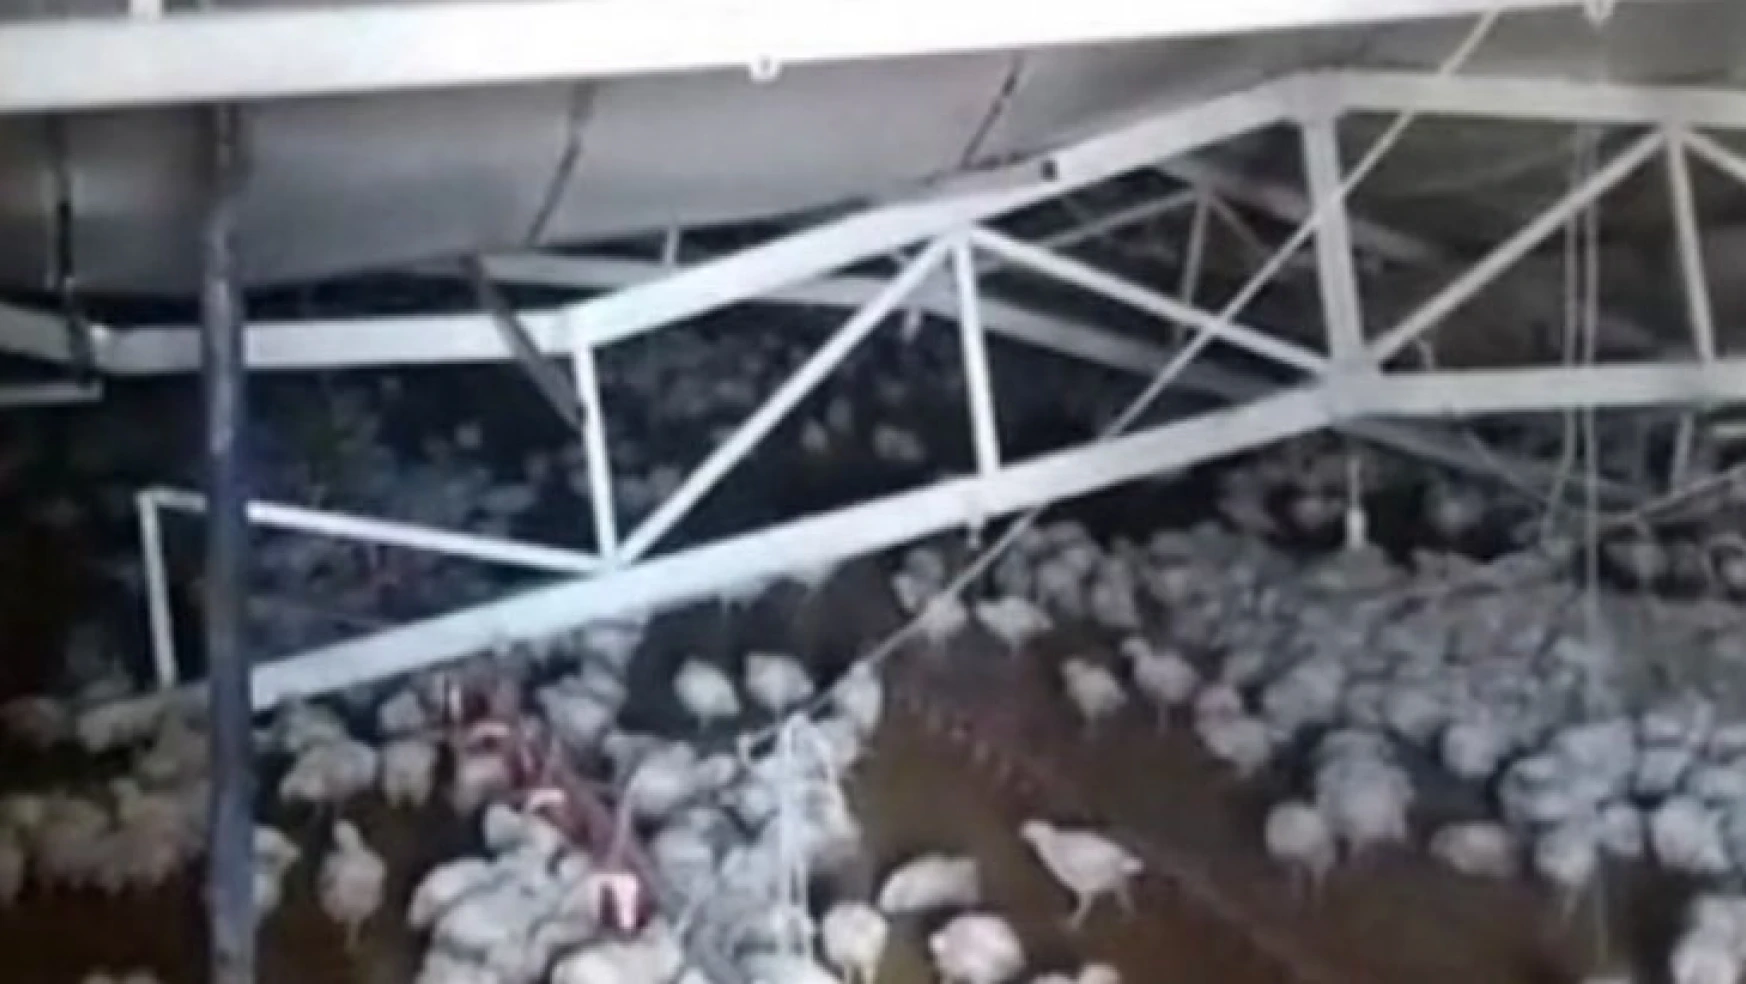 Çiftliğin çatısı kar nedeniyle çöktü, binlerce tavuk telef oldu